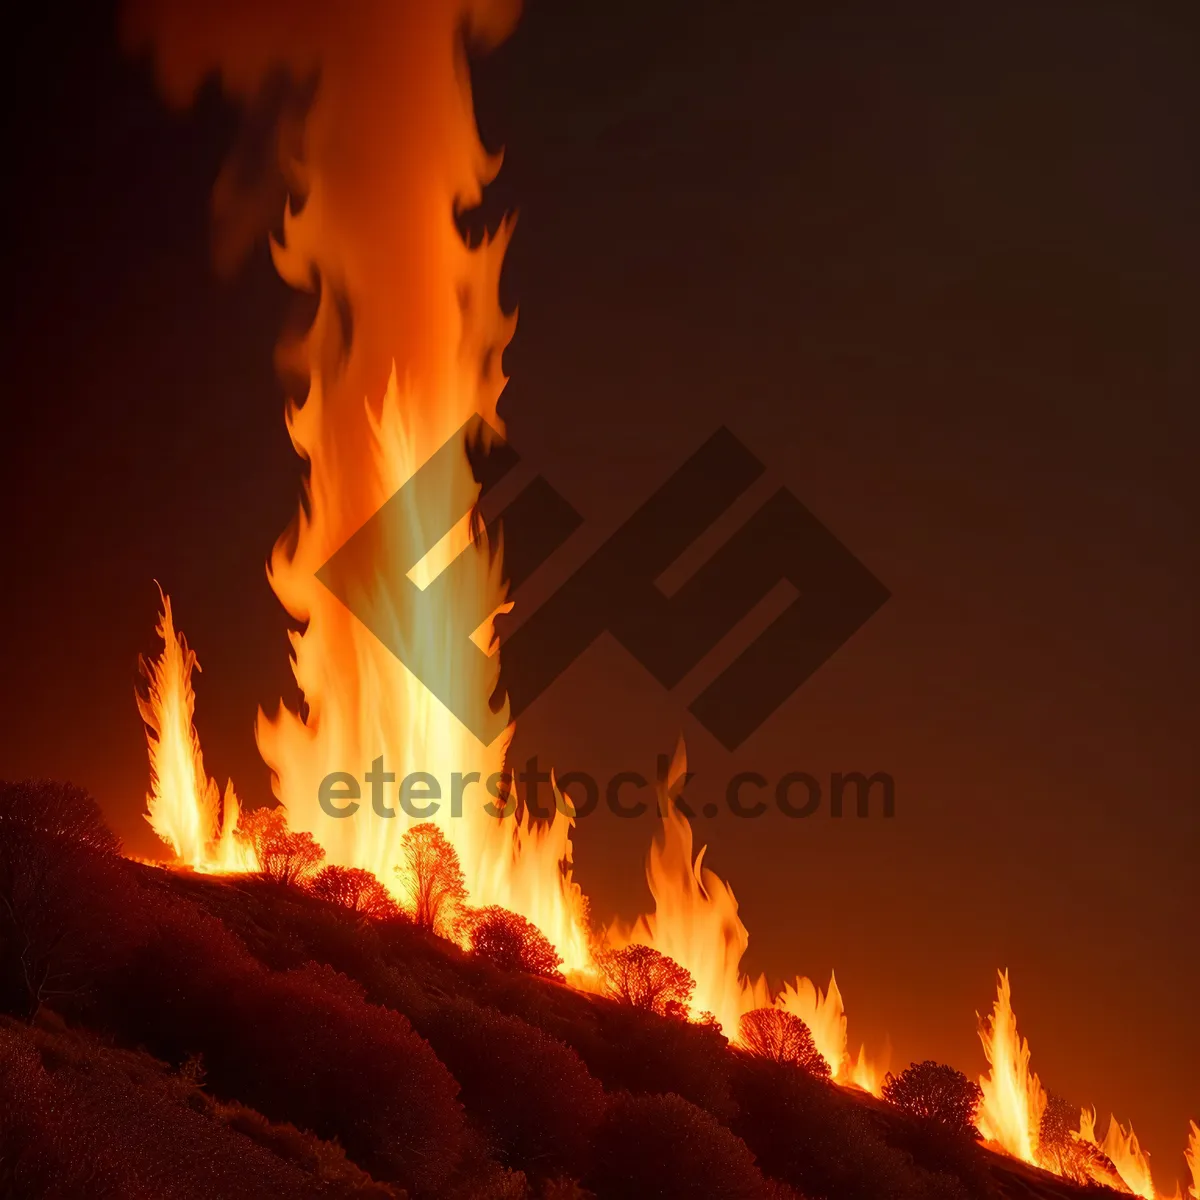 Picture of Fiery Glow: Blaze of Burning Orange Light